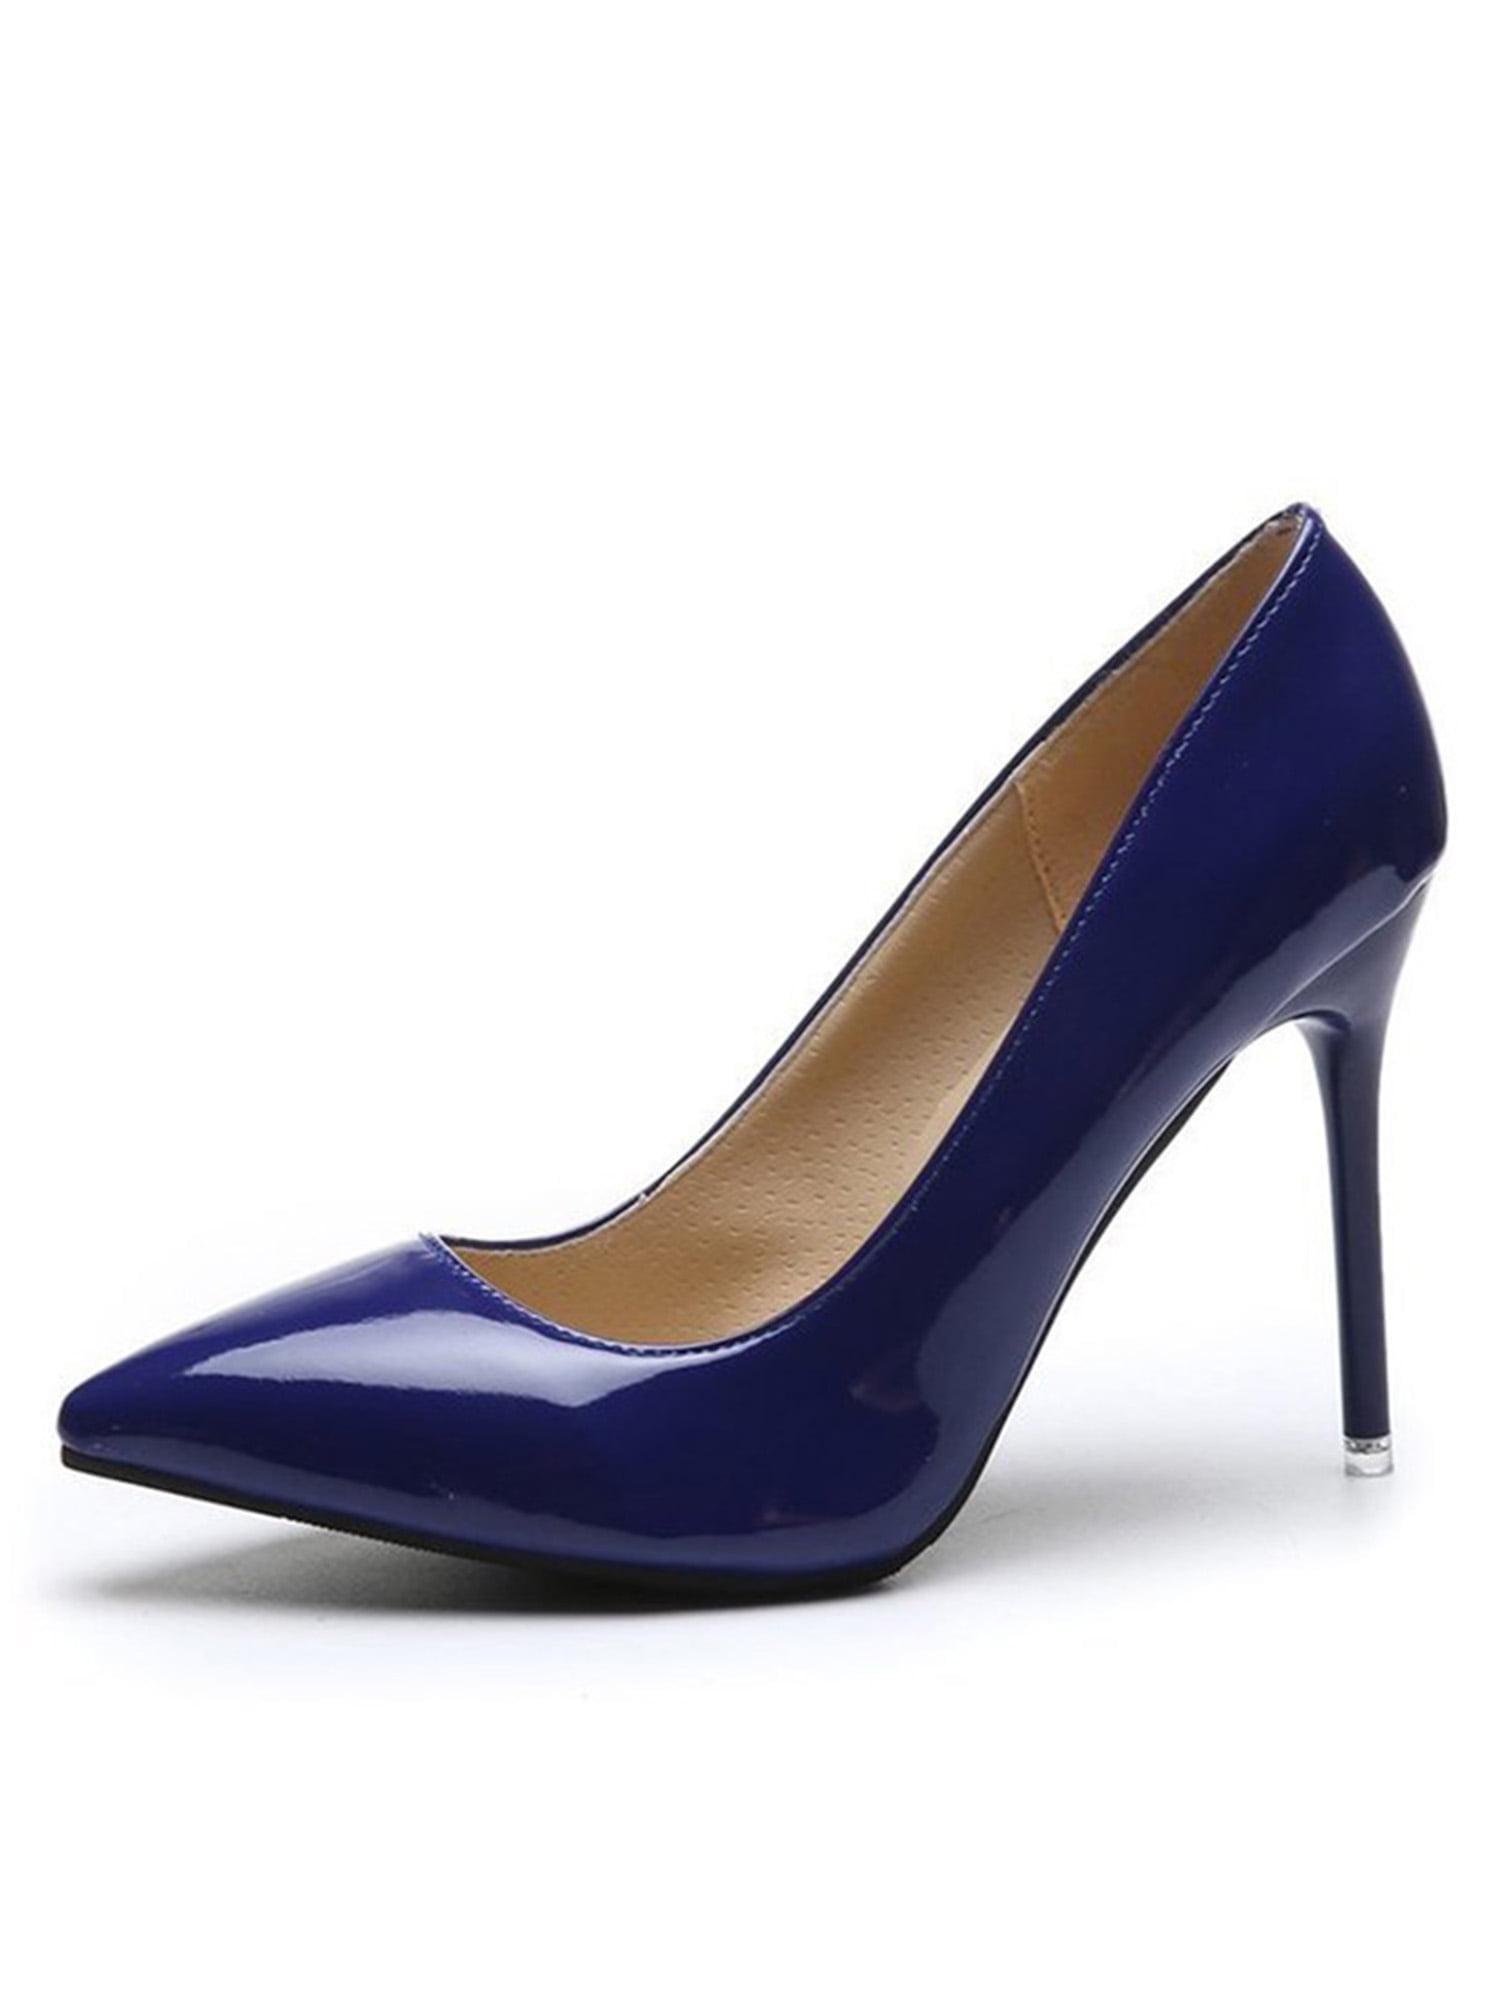 High Heels for Women Closed Toe Stillettos Heel Dress Shoes Blue 8 ...